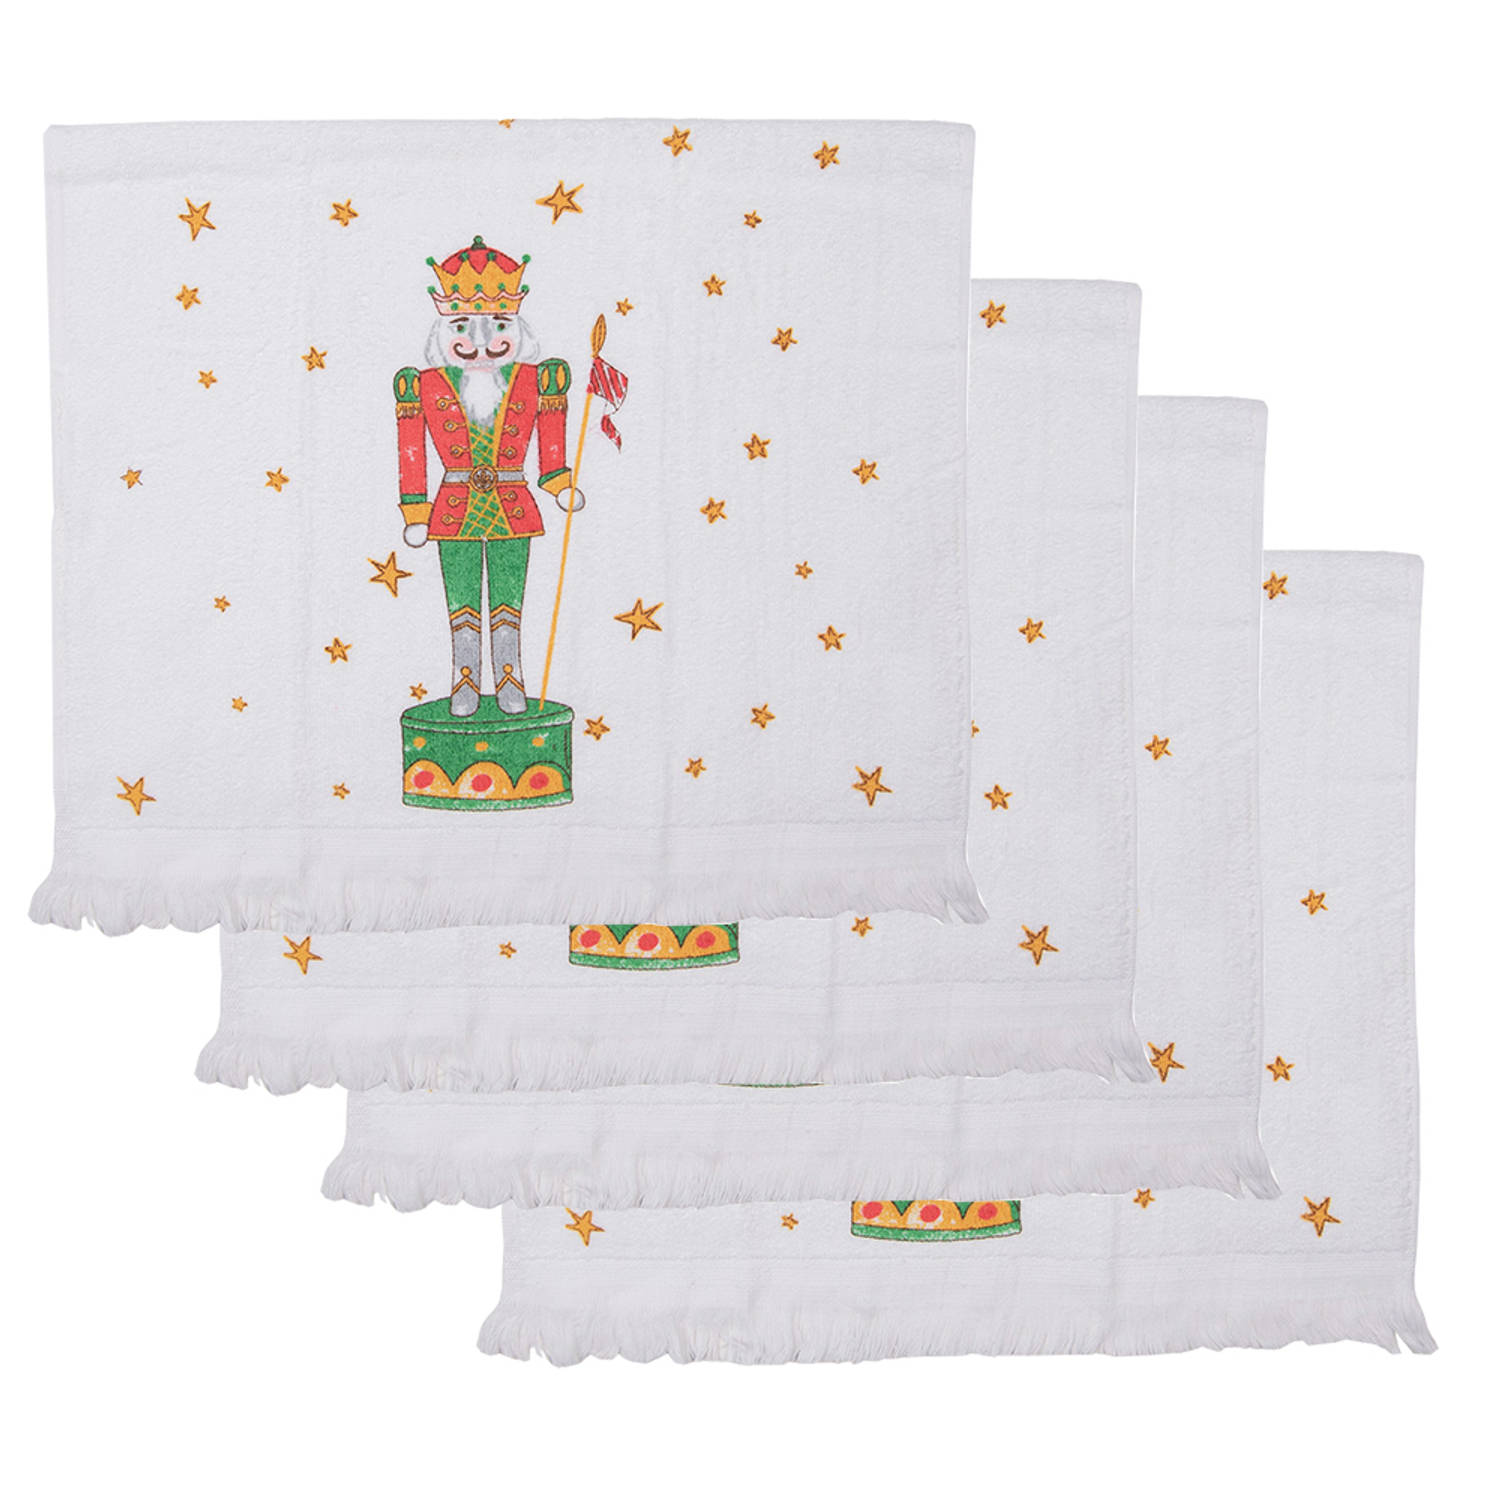 HAES DECO - Set van 4 Gastendoeken - formaat 40x66 cm - kleuren Wit / Rood / Groen / Bruin - van 100% Katoen - Collectie: Happy Little Christmas - Gastendoek / handdoek / Toilethan